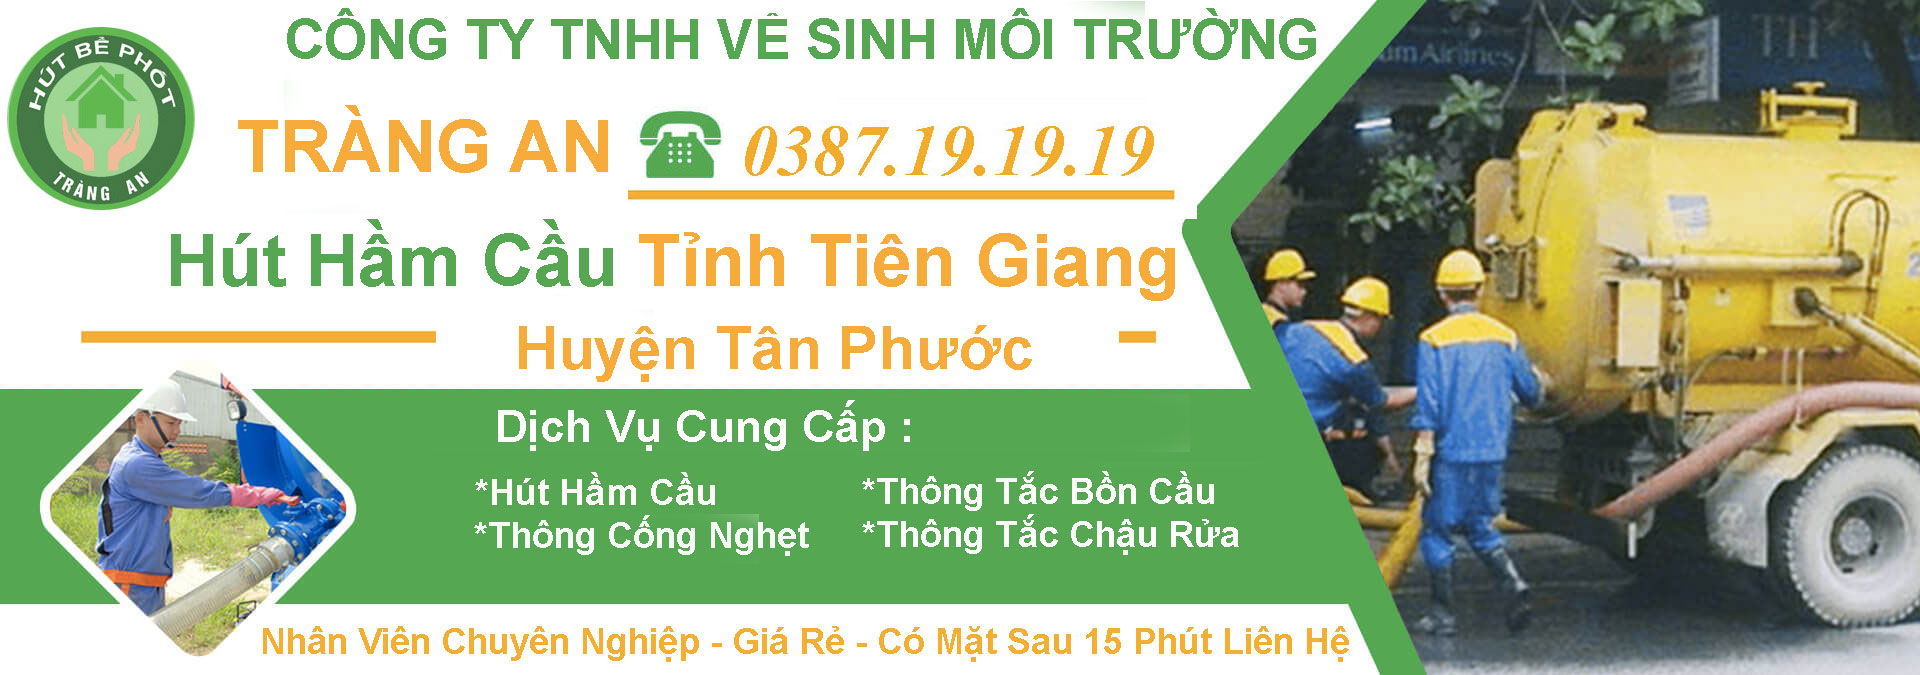 Hut Ham Cau Tinh Tien Giang Tan Phuoc